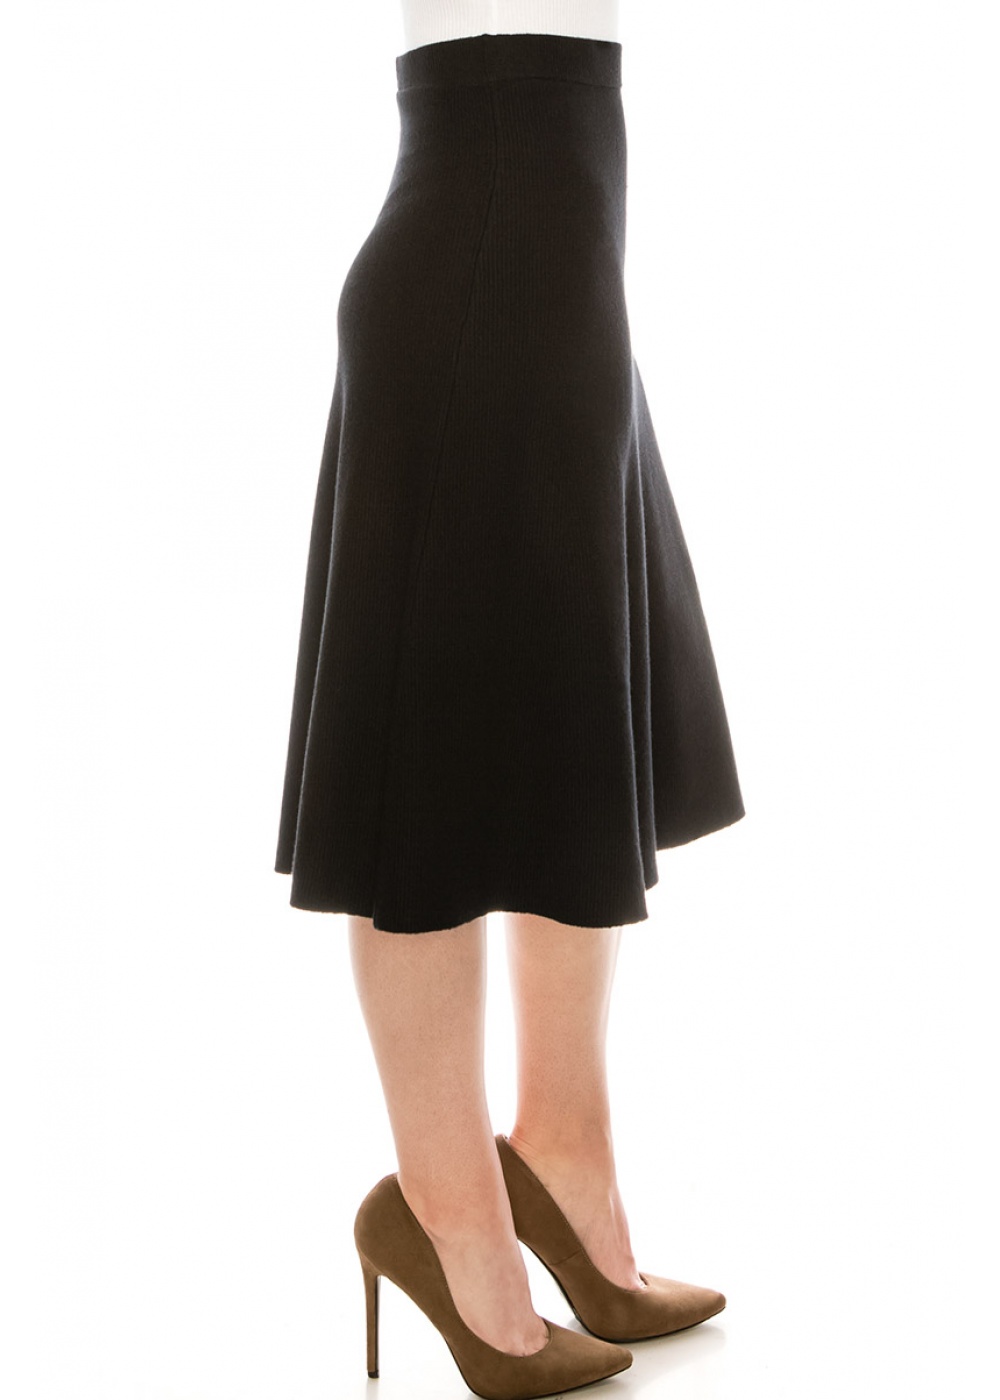 Skirt SKA157-Black